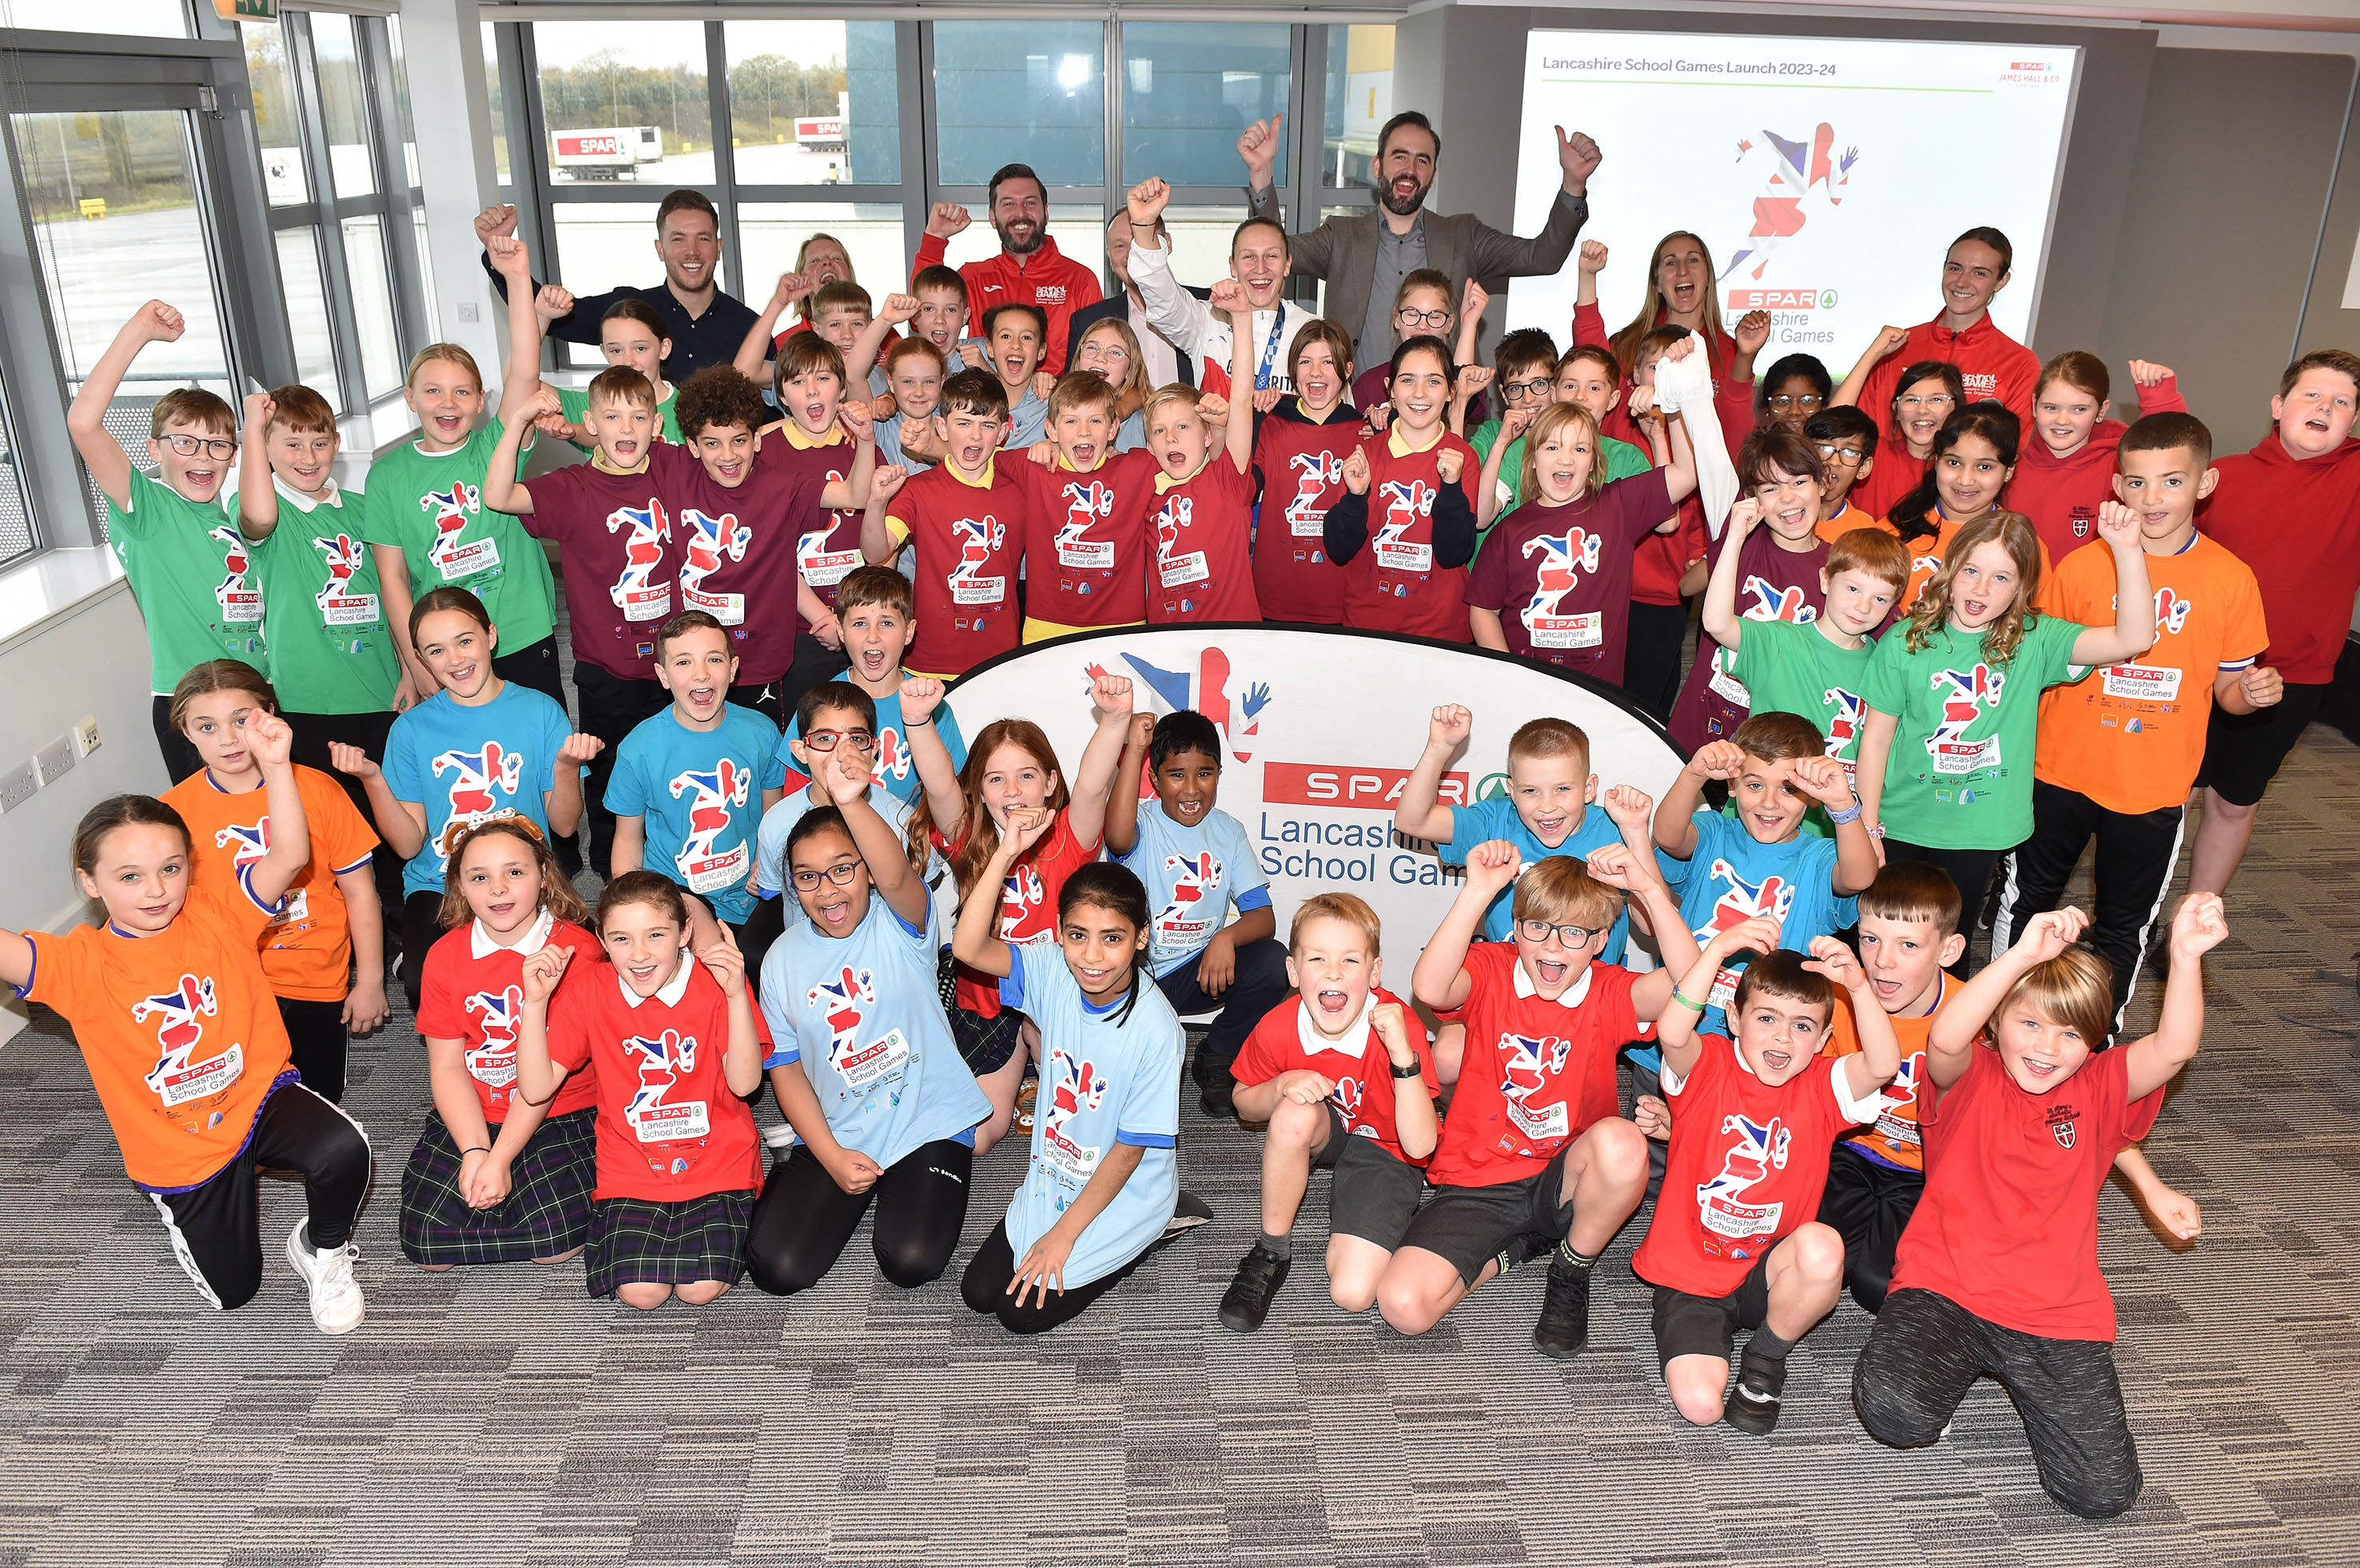 SPAR Lancashire School Games launch at James Hall & Co. Ltd